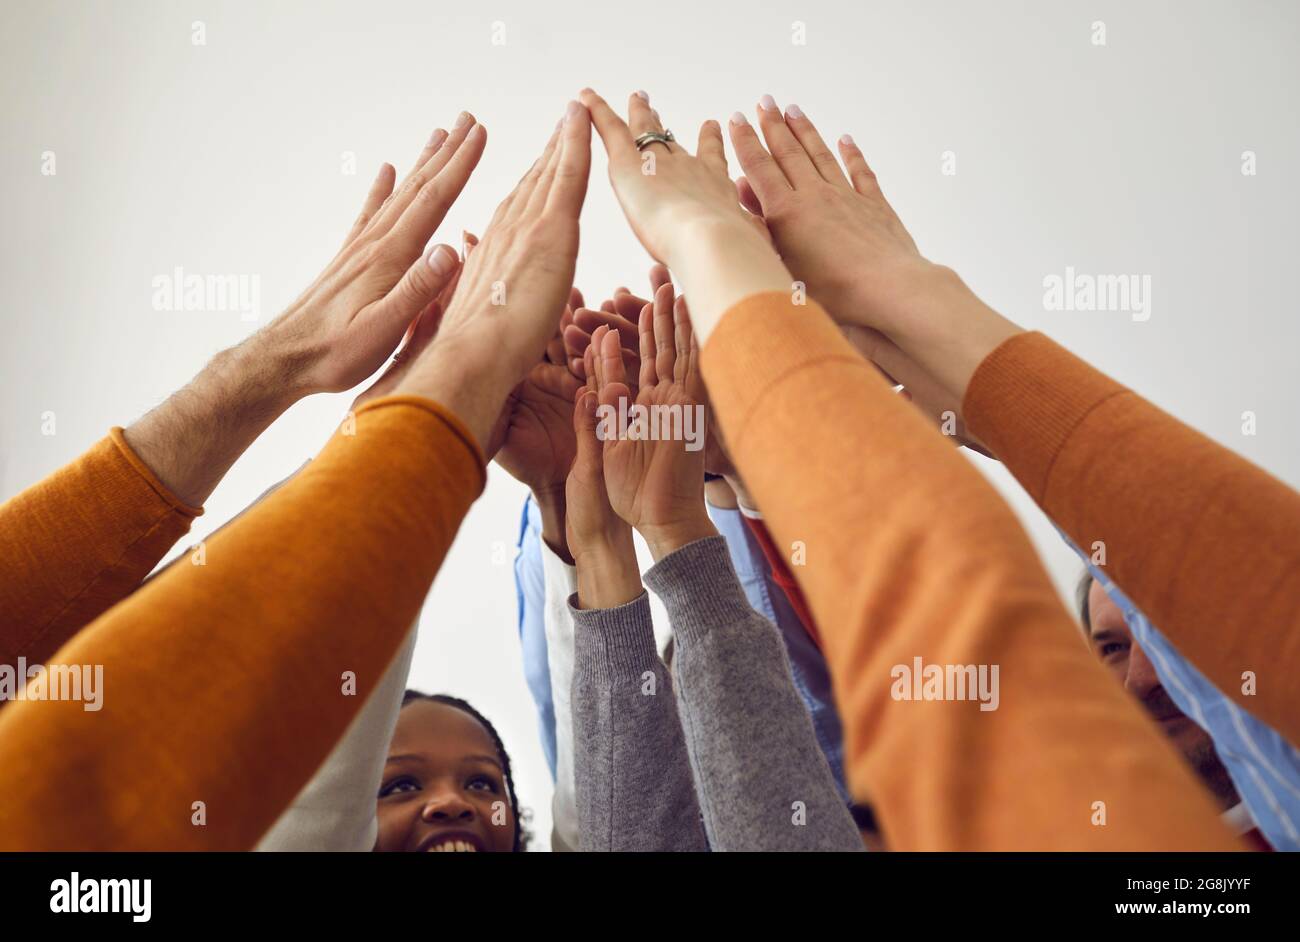 Ein vielseitiges Team glücklicher Geschäftsleute, die ihre Arme heben und sich die Hände verbinden Stockfoto